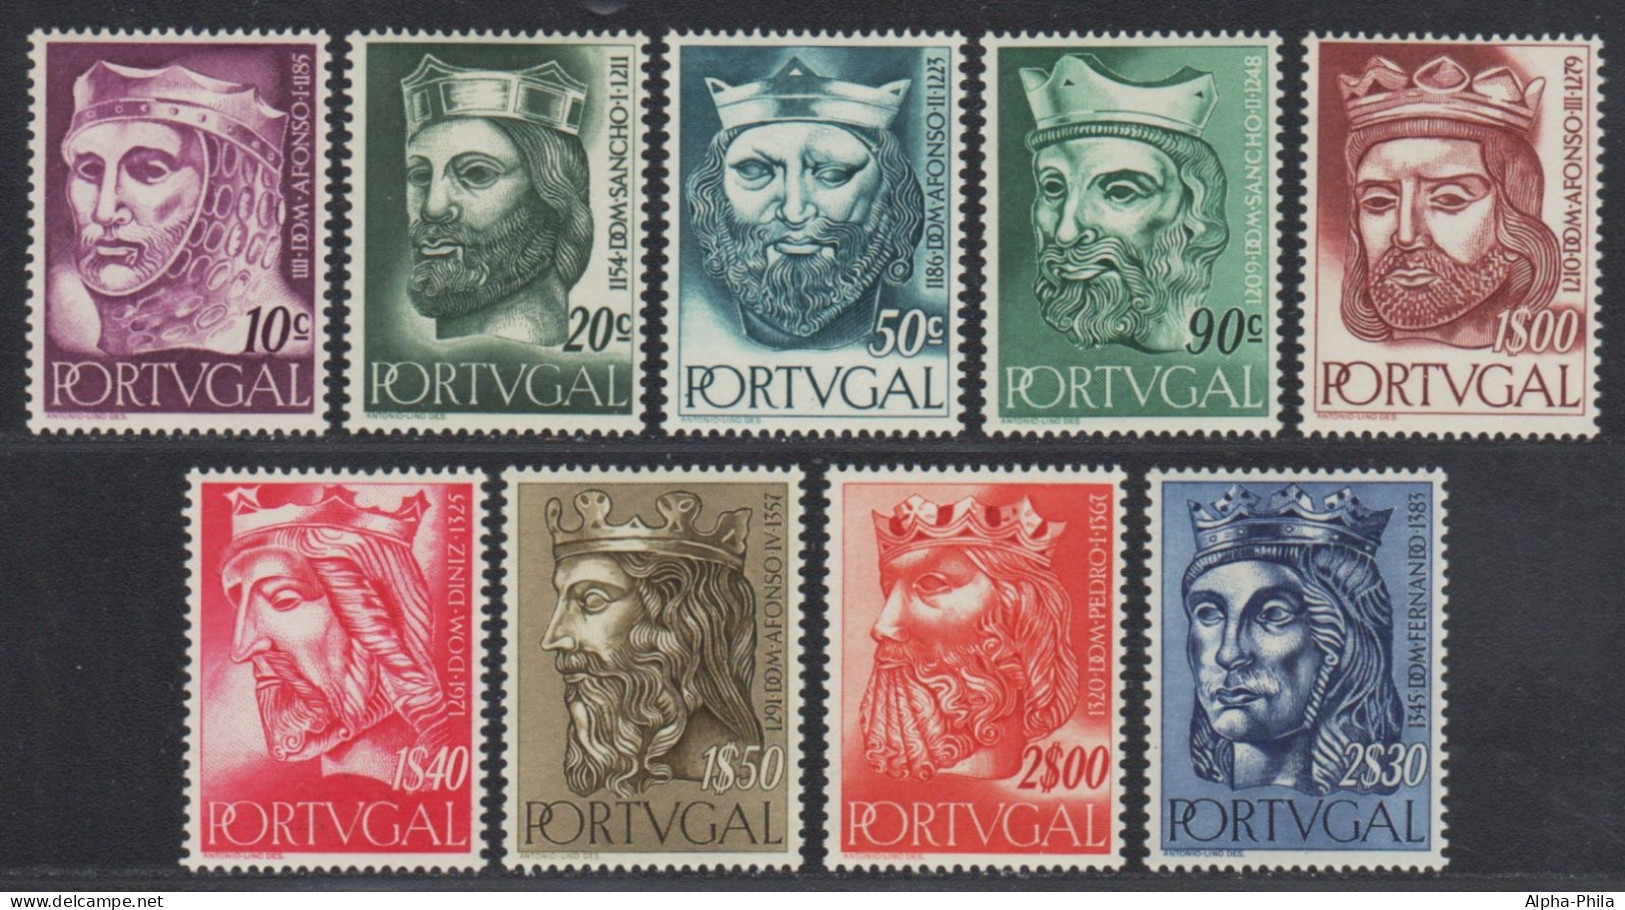 Portugal 1955 - Mi-Nr. 835-843 ** - MNH - Könige / Kings (I) - Ungebraucht